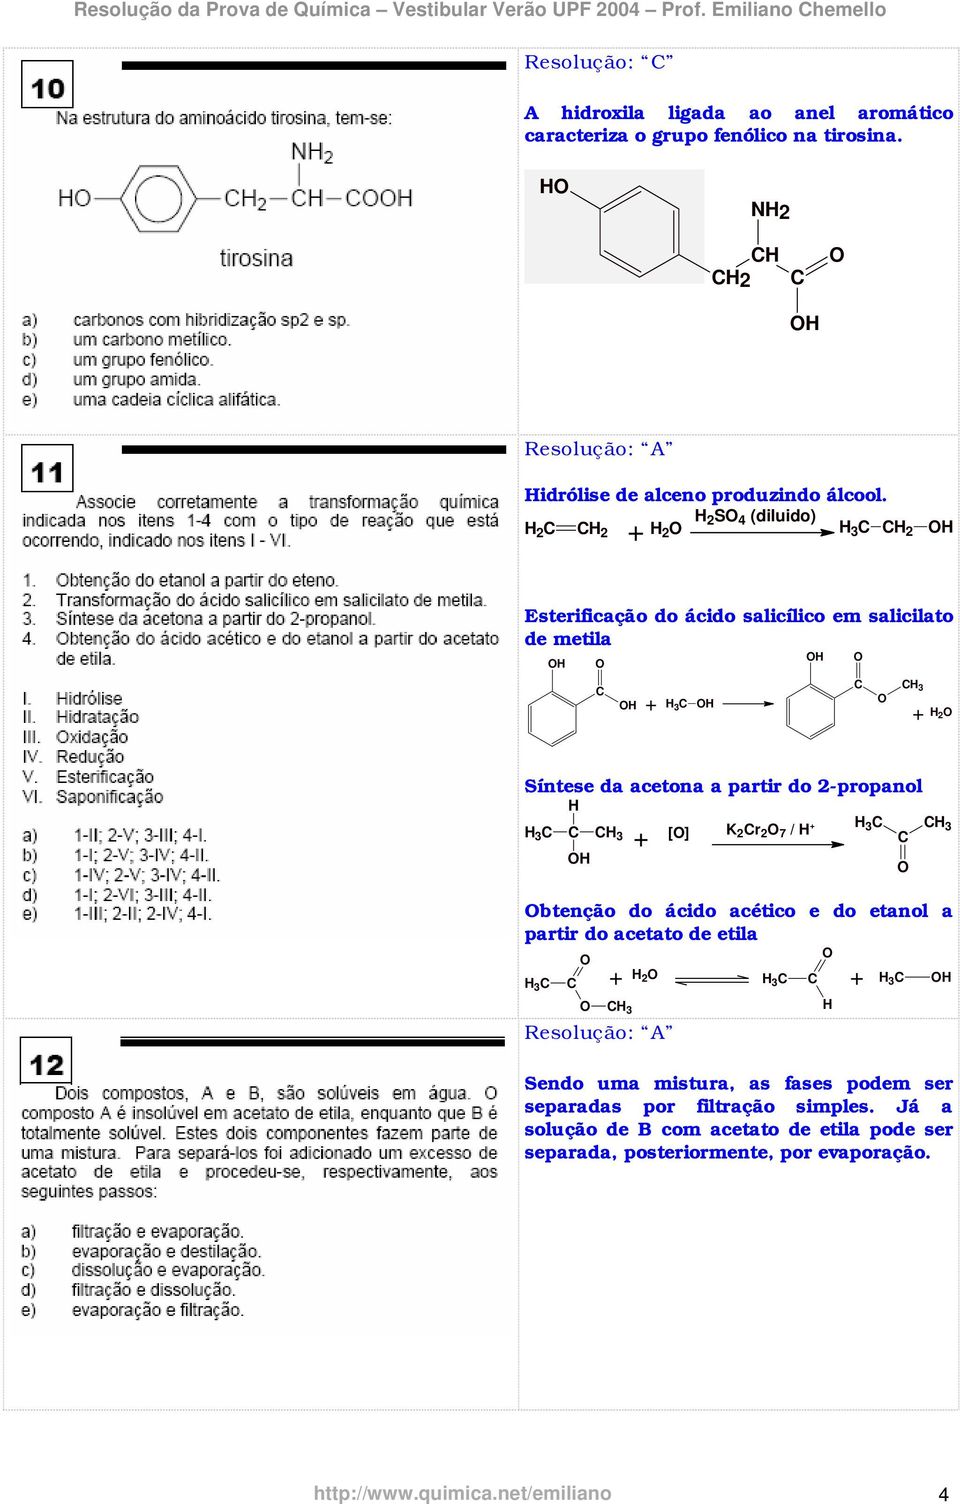 2-propanol H 3 H 3 [] btenção do ácido acético e do etanol a partir do acetato de etila H 3 H H H 3 H 2 K 2 r 2 7 / H H3 H 3 H 3 Sendo uma mistura, as